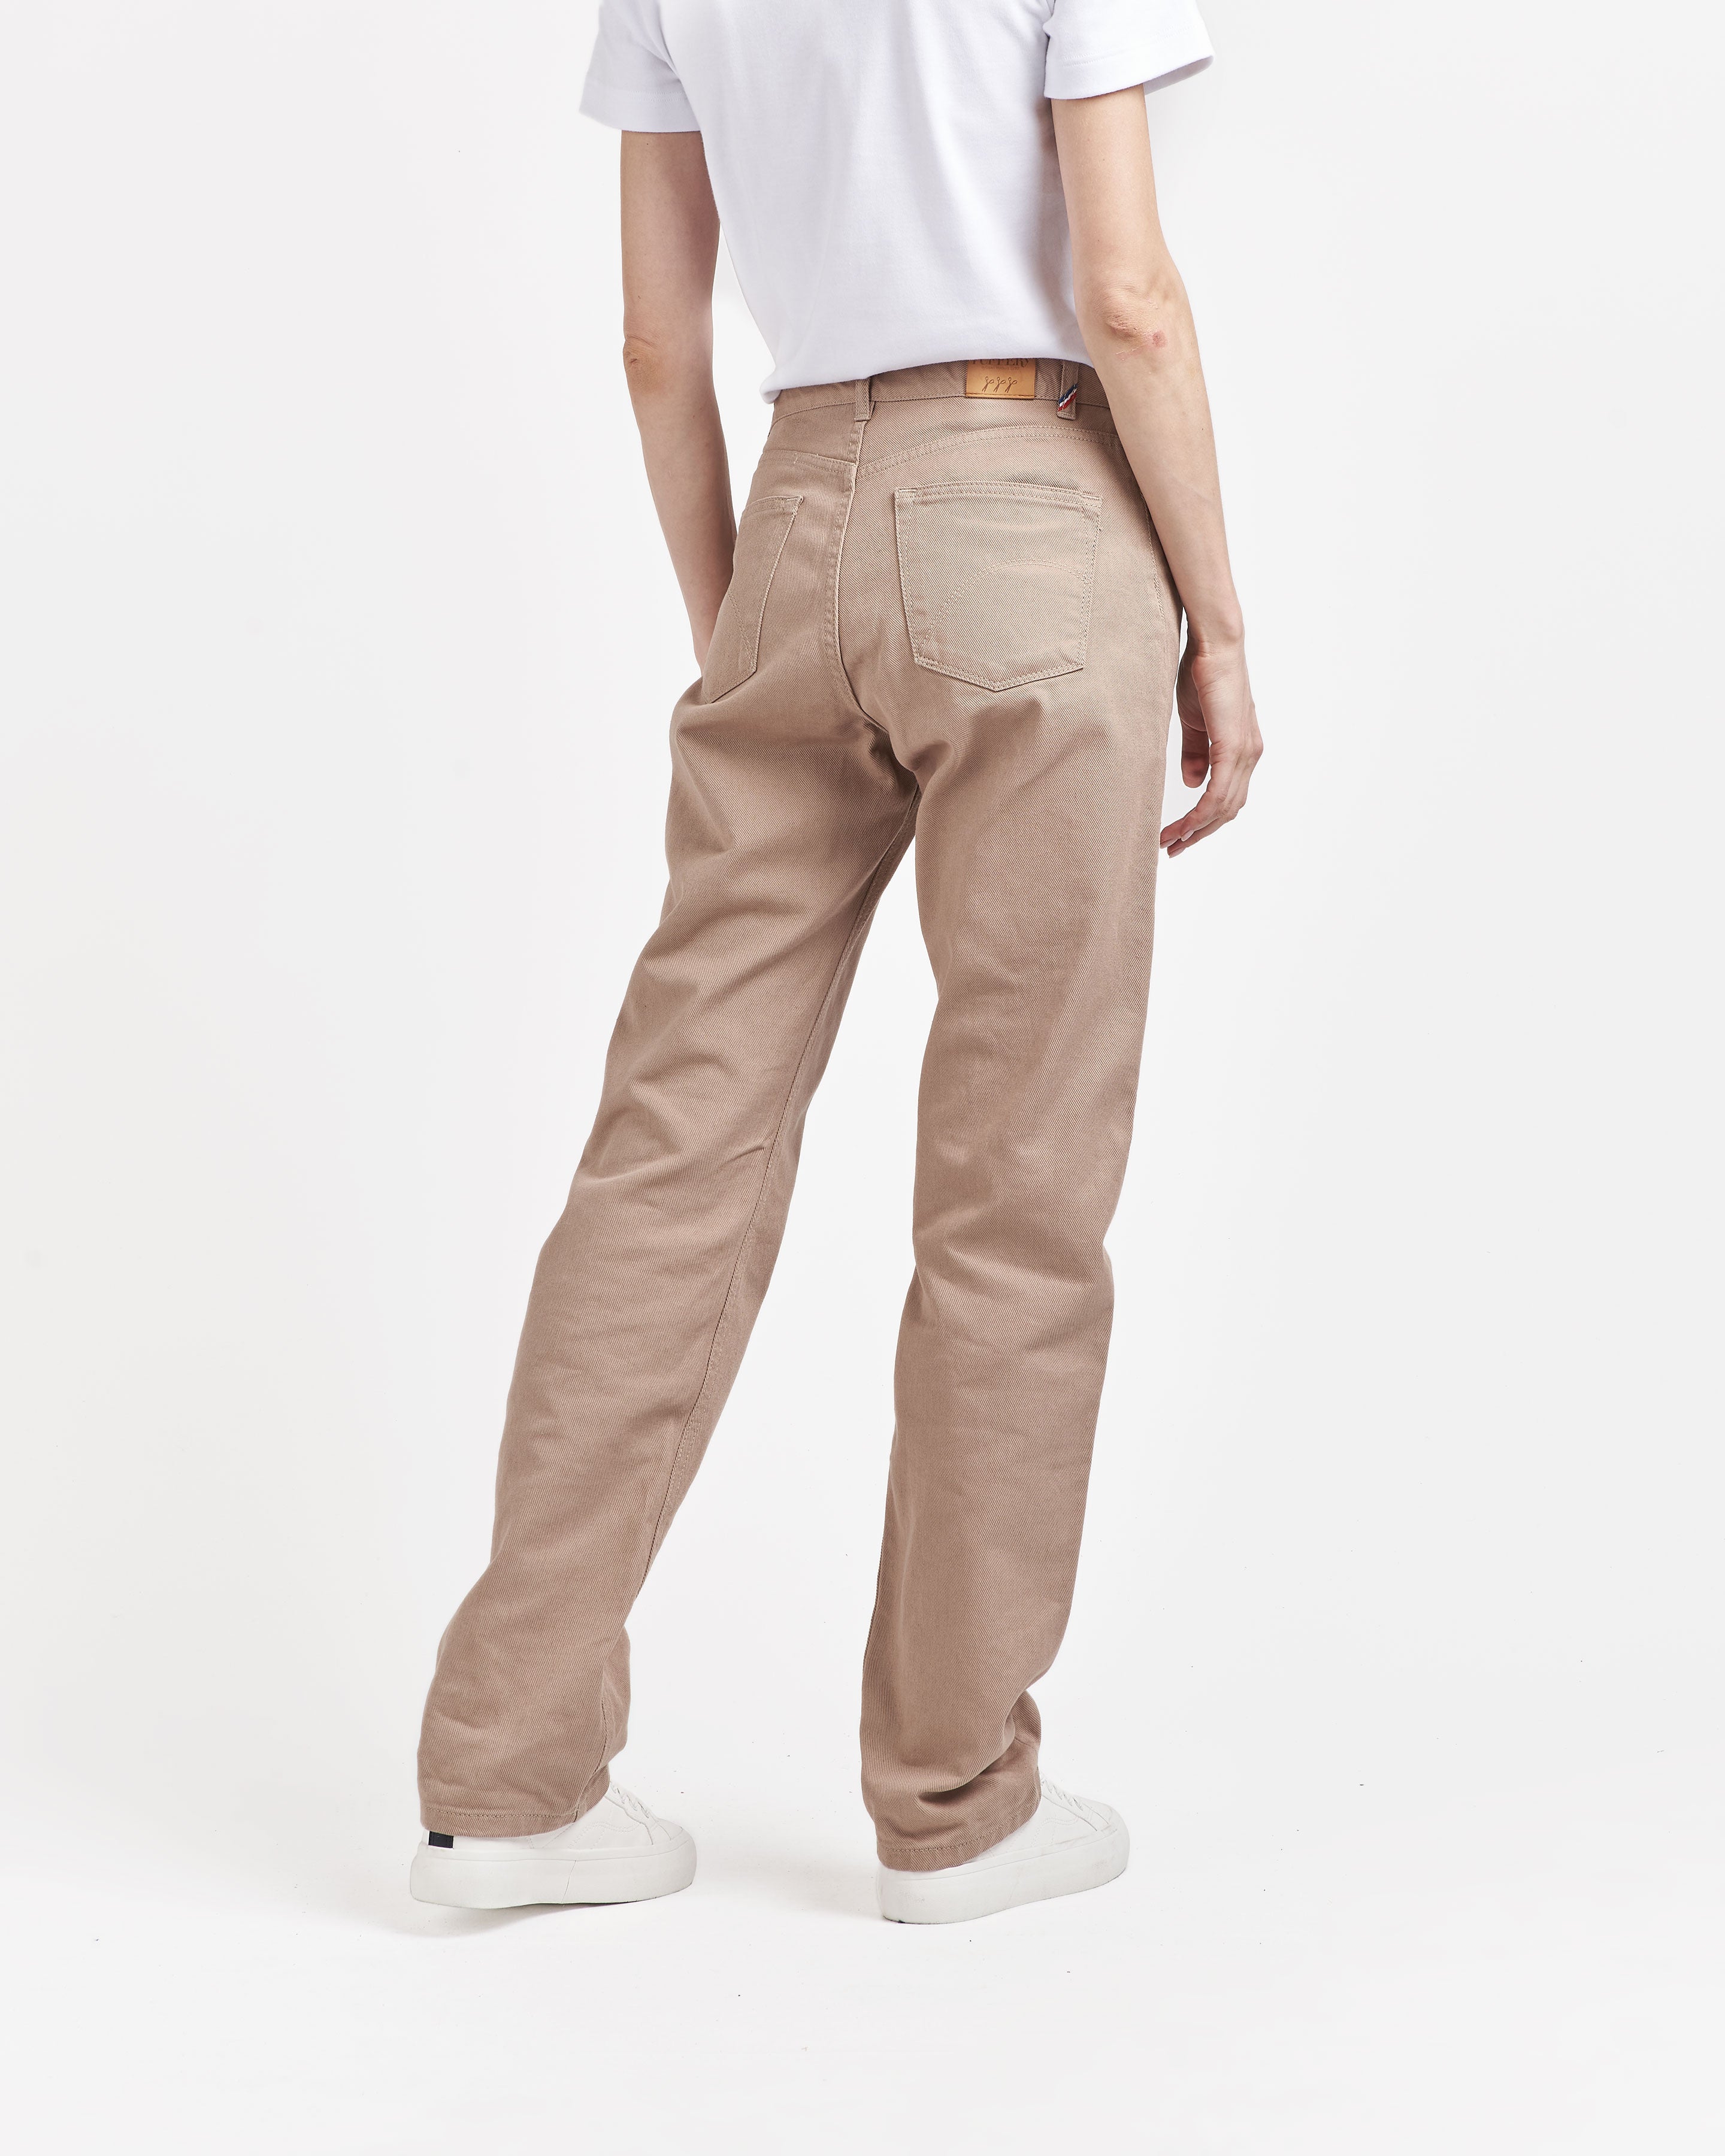 Pantalon femme droit taille haute naturel - Gabi – Atelier Tuffery